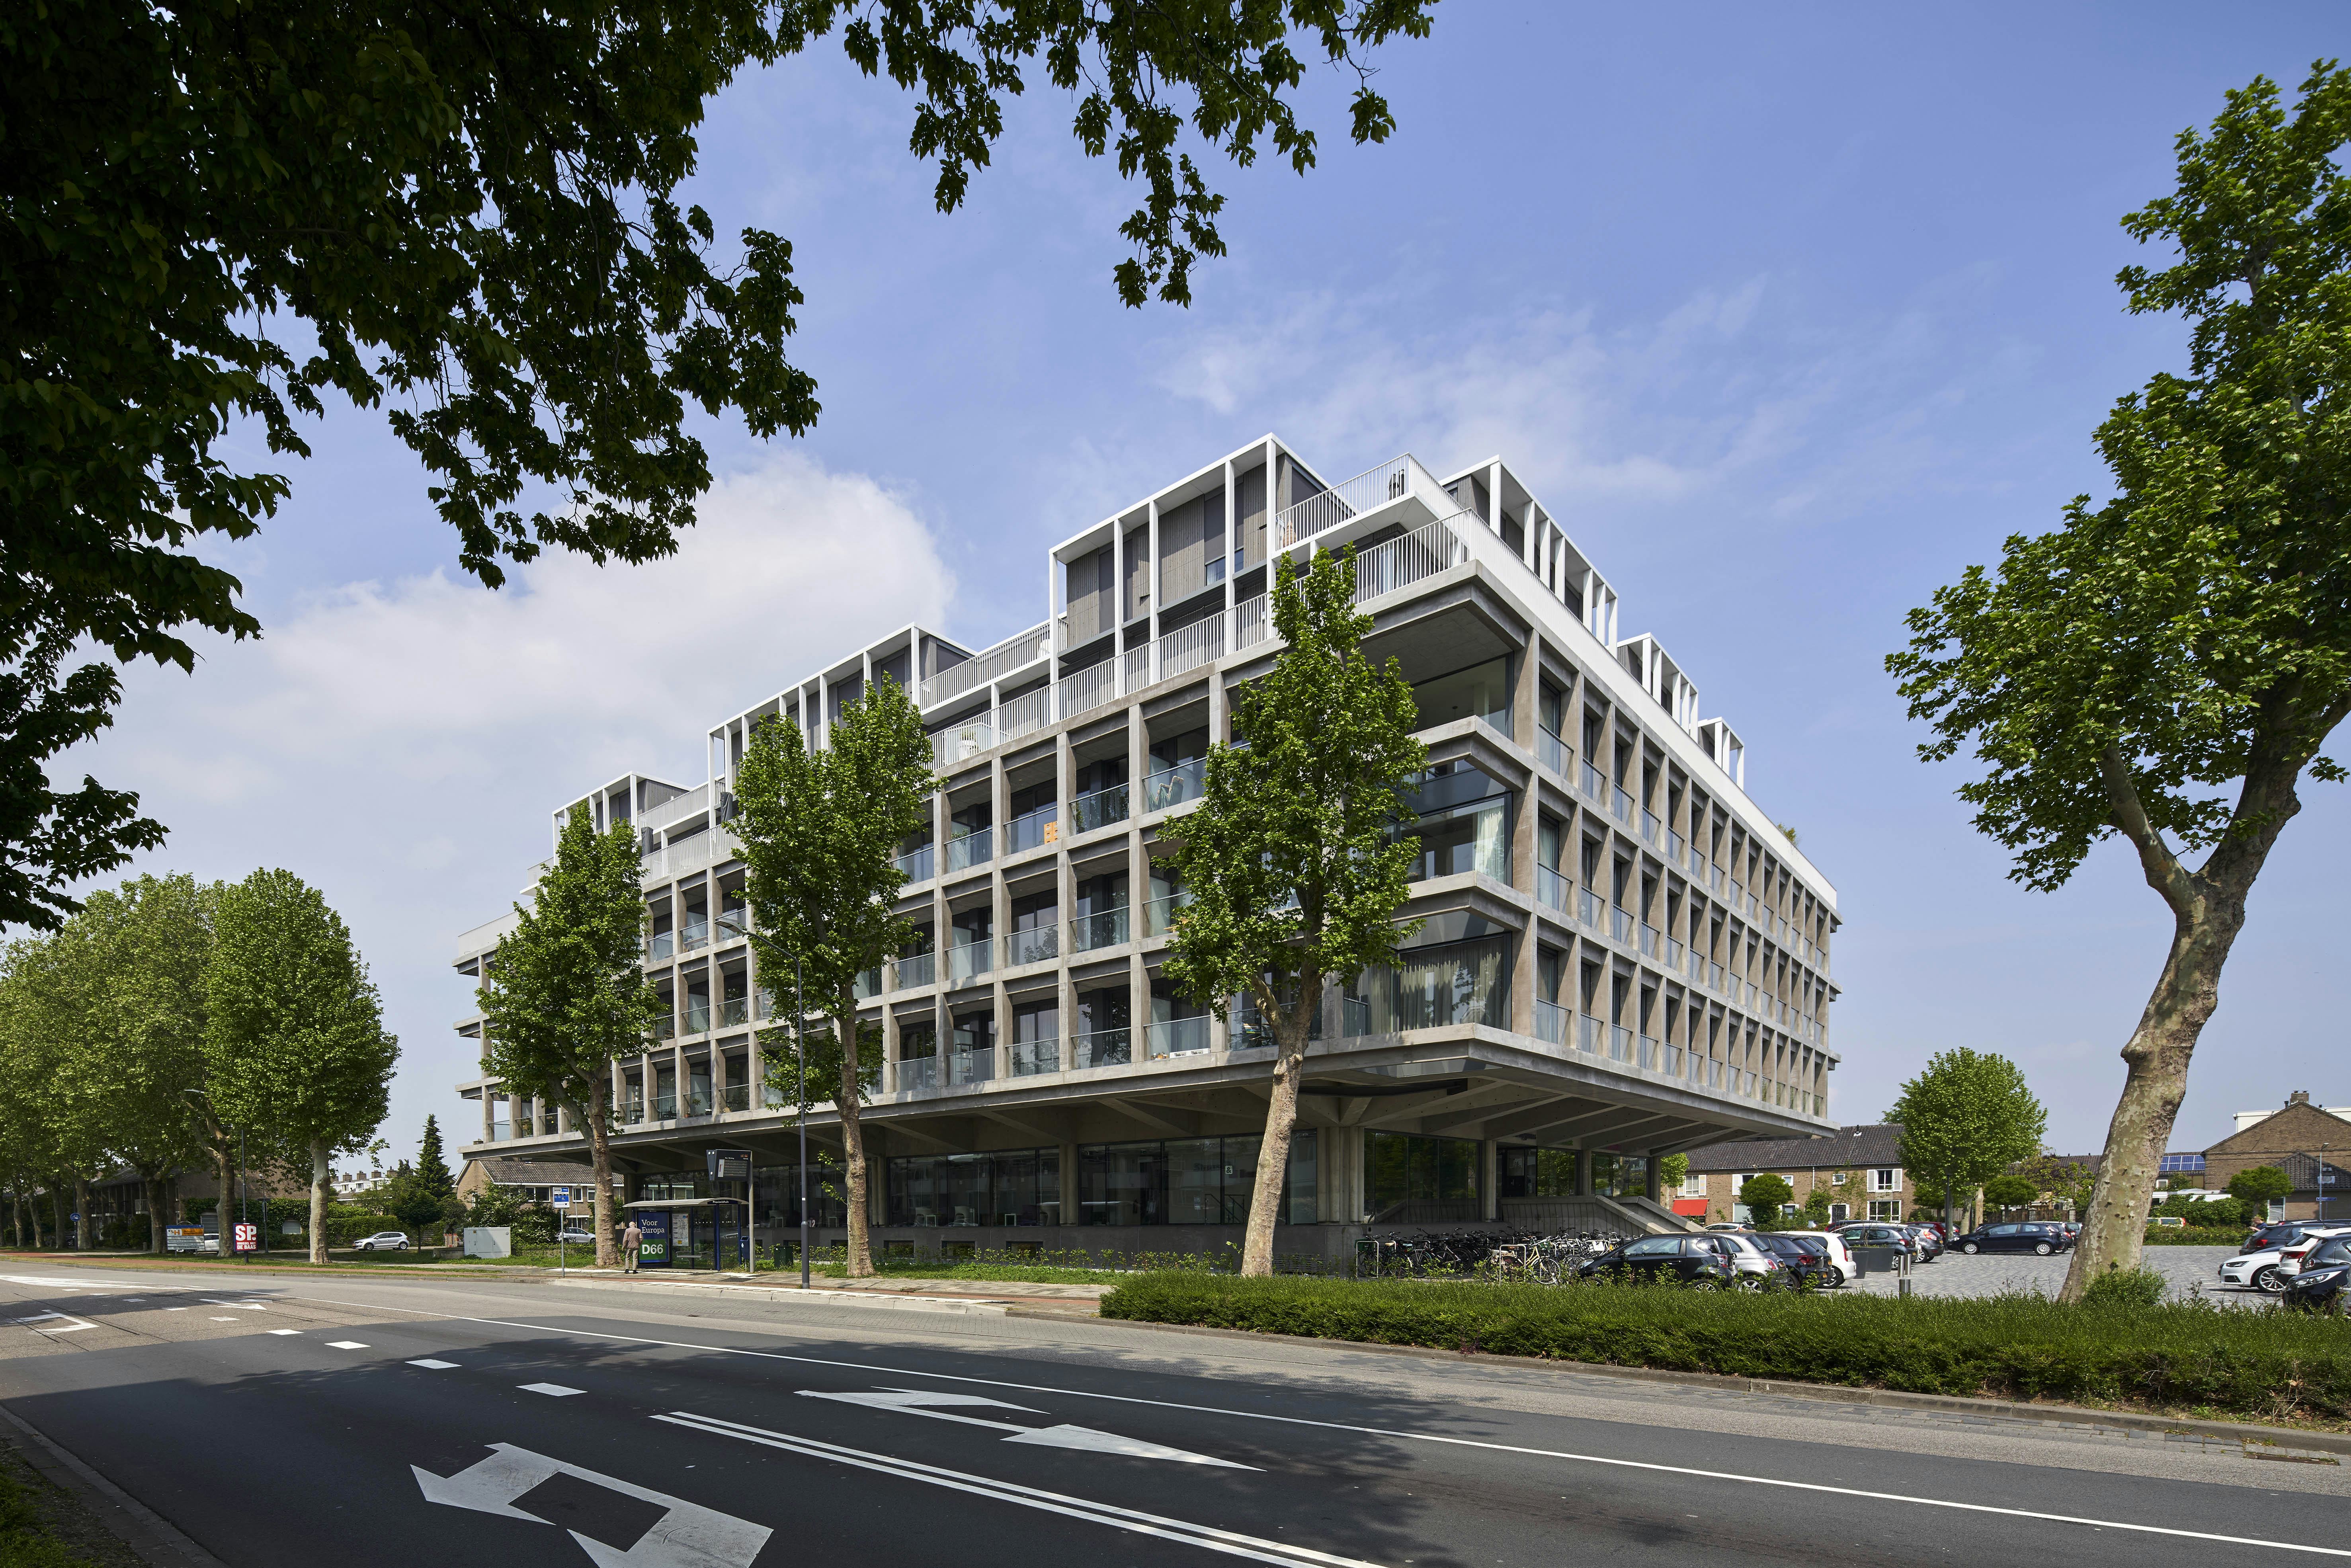 Kantoorgebouw Schubertsingel Den Bosch door Houben / Van Mierlo Architecten is de winnaar van de ARC19 Development Award. Beeld René de Wit